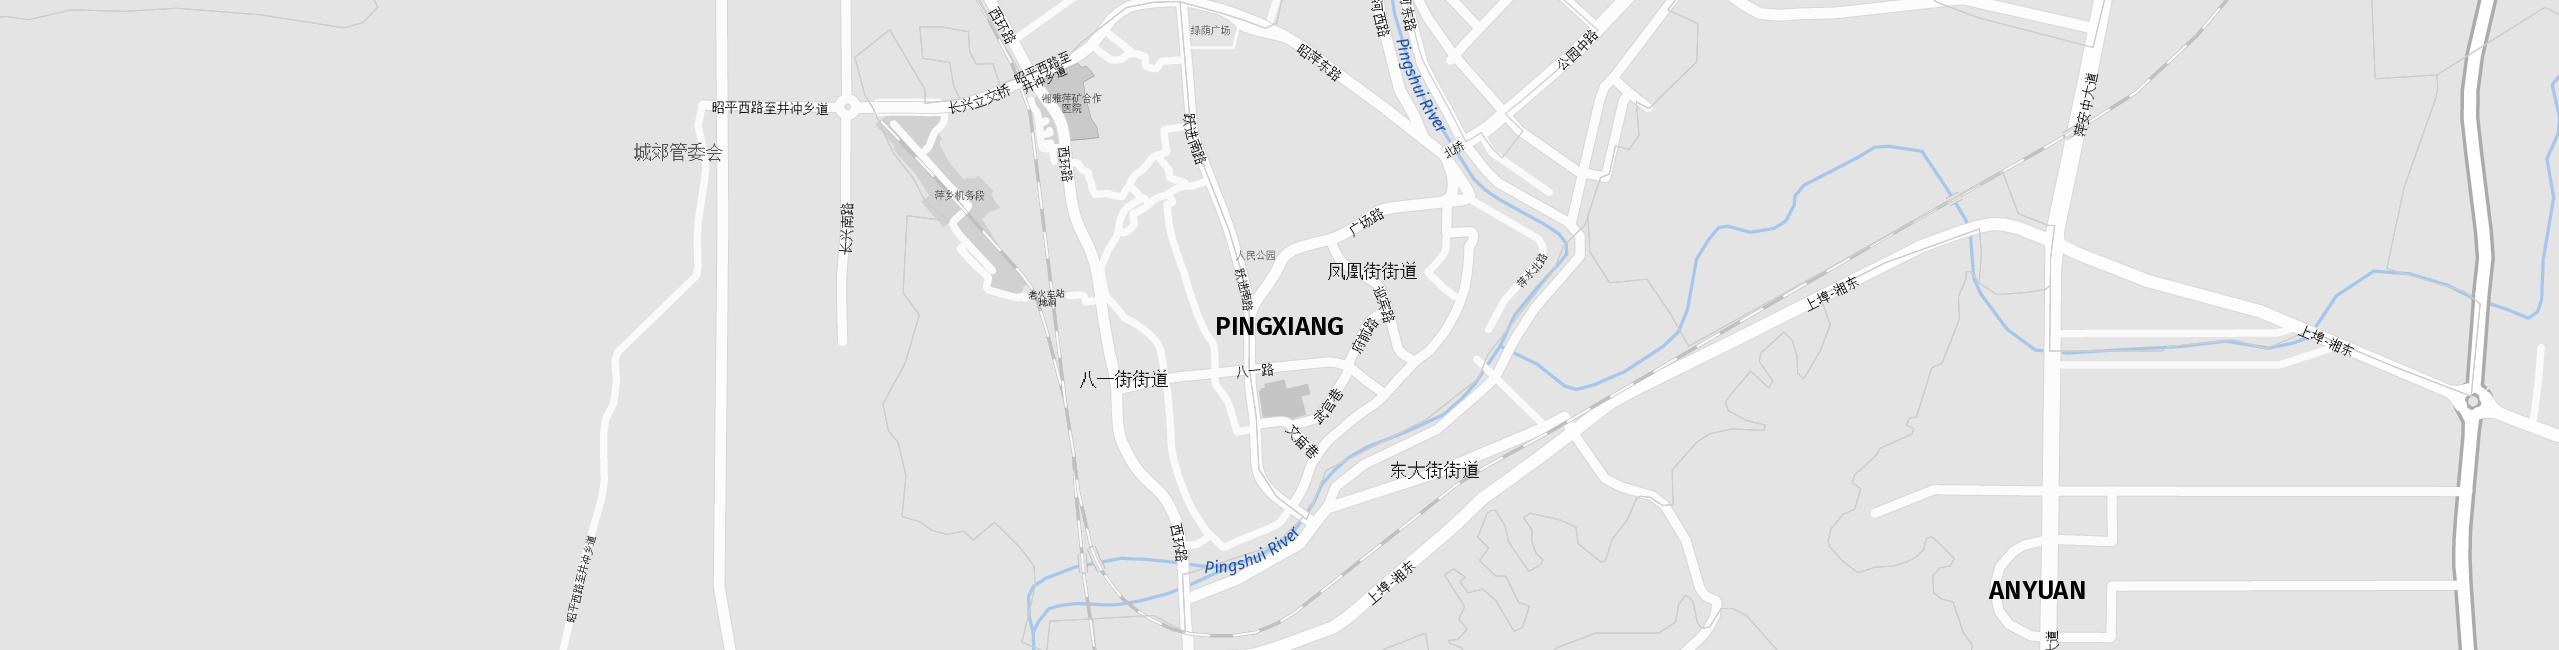 Stadtplan Pingxiang zum Downloaden.